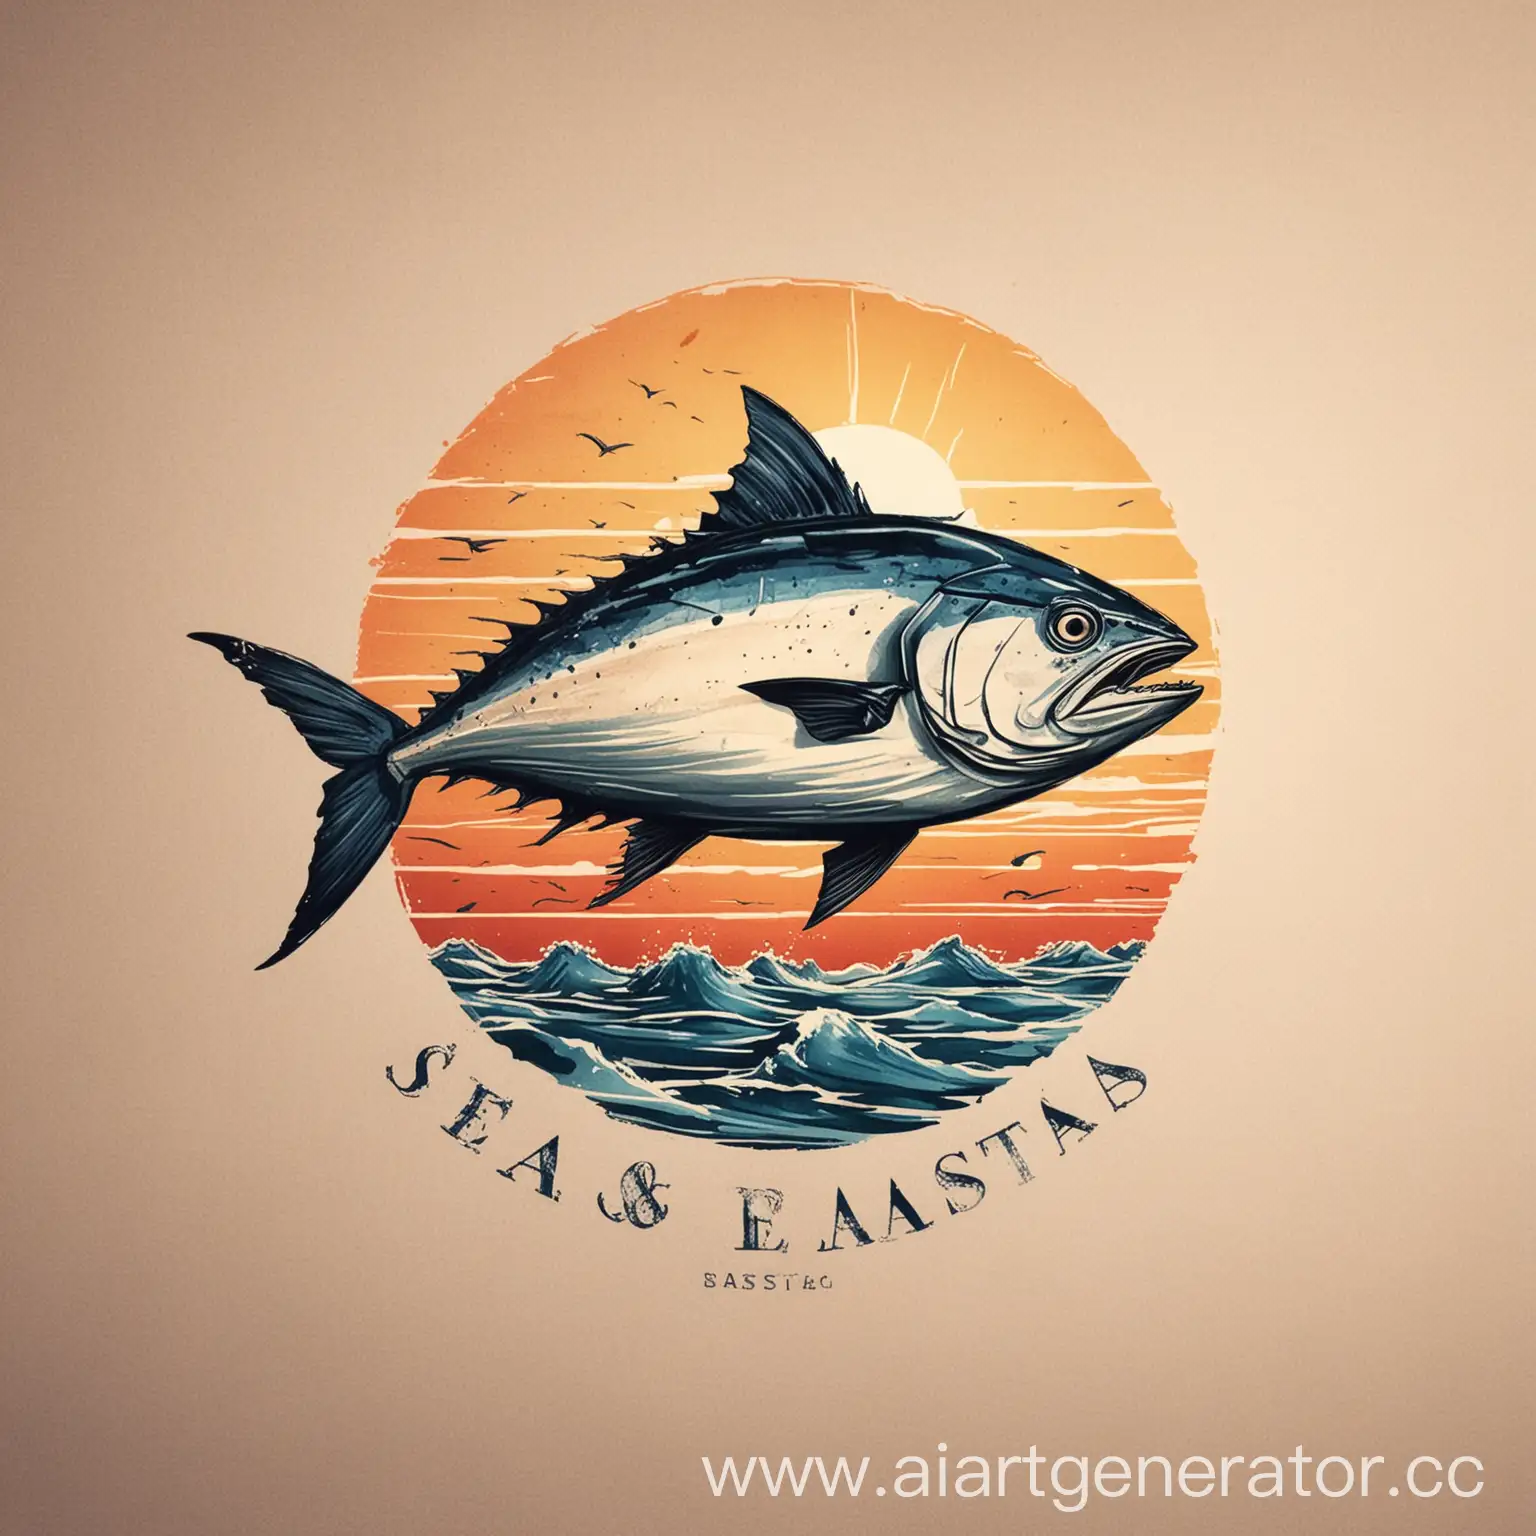 Seabasta, море, sea, морепродукты, seafood, tuna, без рисунка рыбы, закат,
Логотип,фирменный стиль, название seabasta, меньше рыбы, больше дизайна, без рыбы

